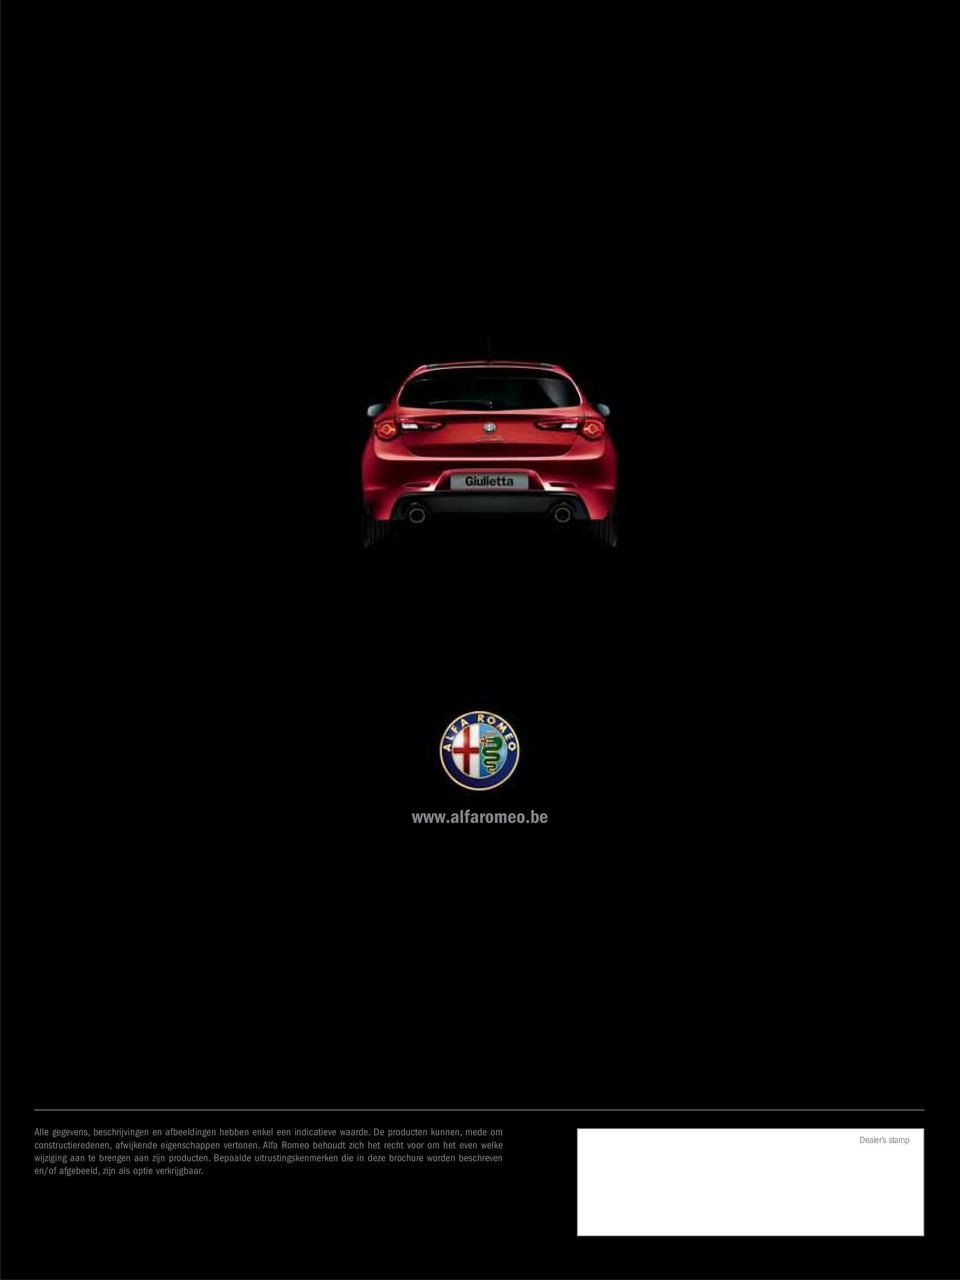 Alfa Romeo behoudt zich het recht voor om het even welke wijziging aan te brengen aan zijn producten.